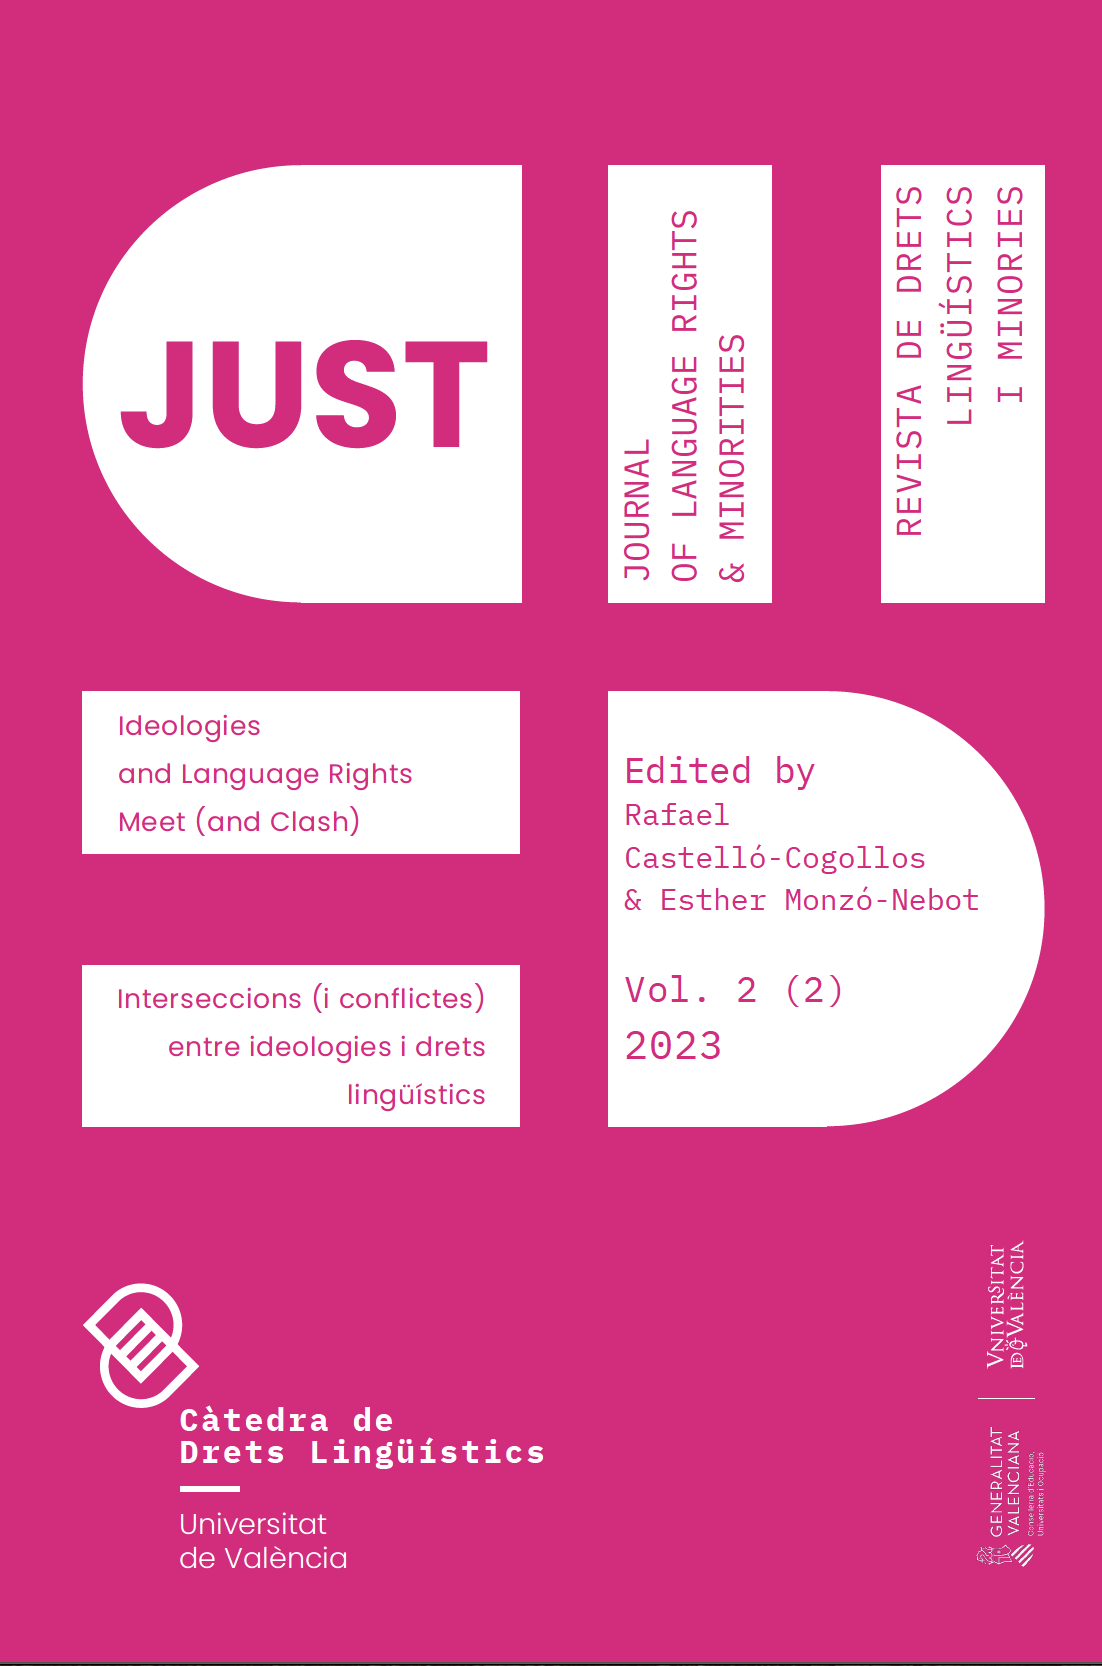 Issue 2 (2) of Just. Journal of Language Rights & Minorities, Revista de Drets Lingüístics i Minories